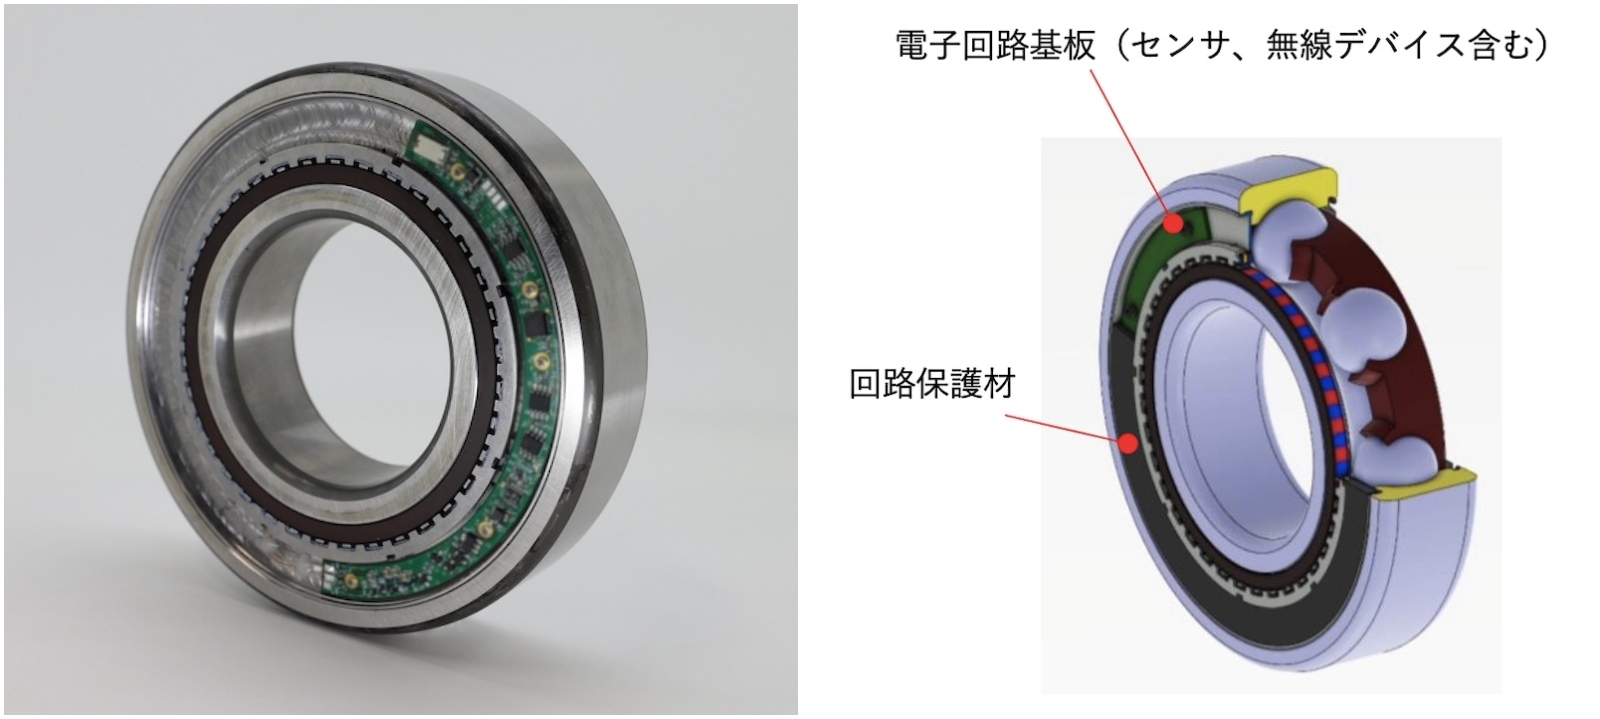 図1　「しゃべる軸受」の外観（左）と構造（右） 外観はサンプルで、実際の製品では電子回路基盤を保護材で覆う。（出所：NTN）